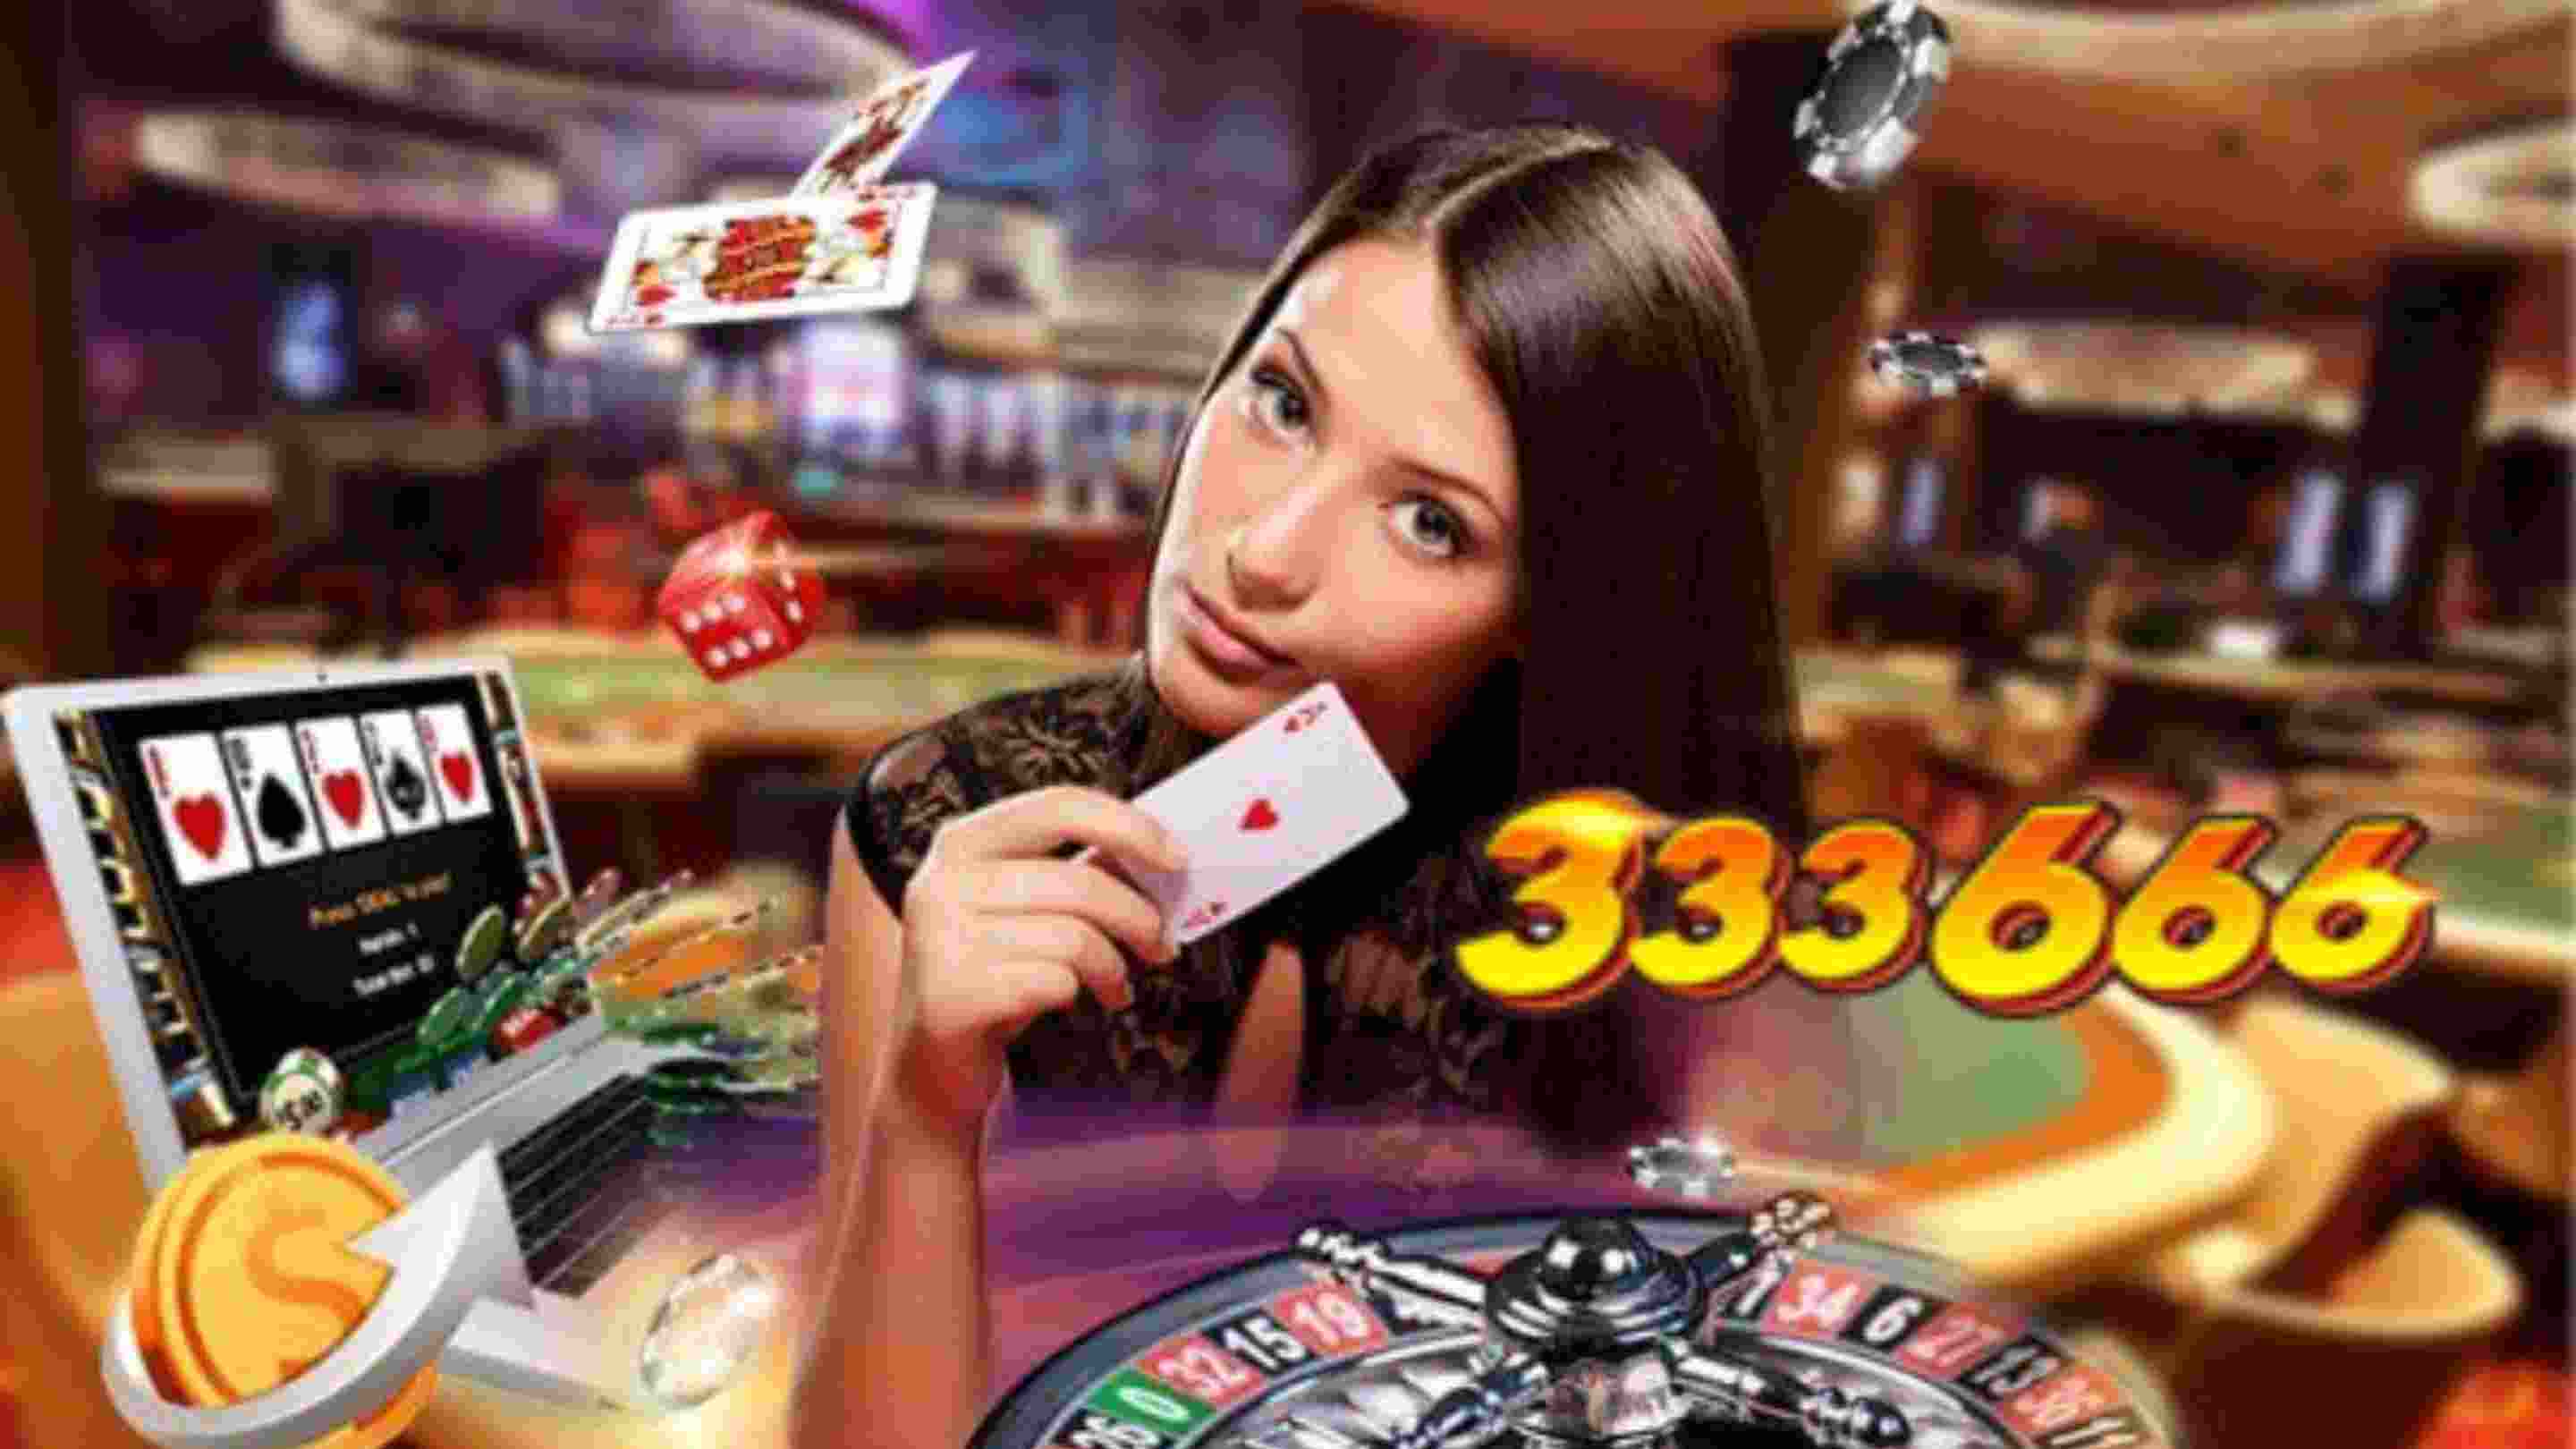 Chiến lược cược Live Casino 333666 kiếm thu nhập cao.jpg